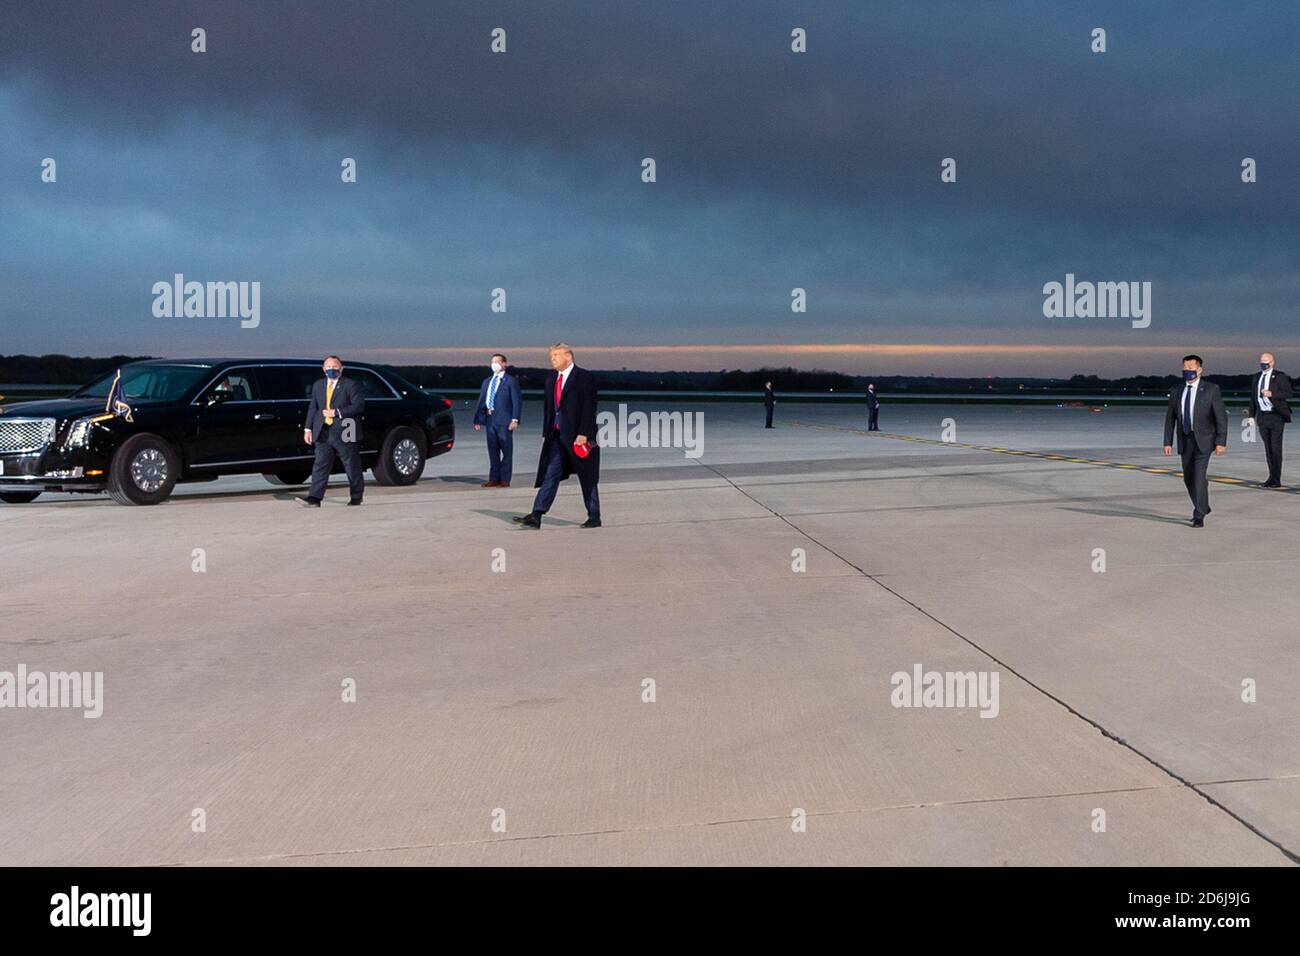 Präsident Donald J. Trump geht über die Asphaltbahn, nachdem er am Mittwoch, den 14. Oktober 2020, in des Moines, Iowa, die Air Force One am internationalen Flughafen des Moines aussteigt. Personen: Präsident Donald Trump Kredit: Storms Media Group/Alamy Live News Stockfoto